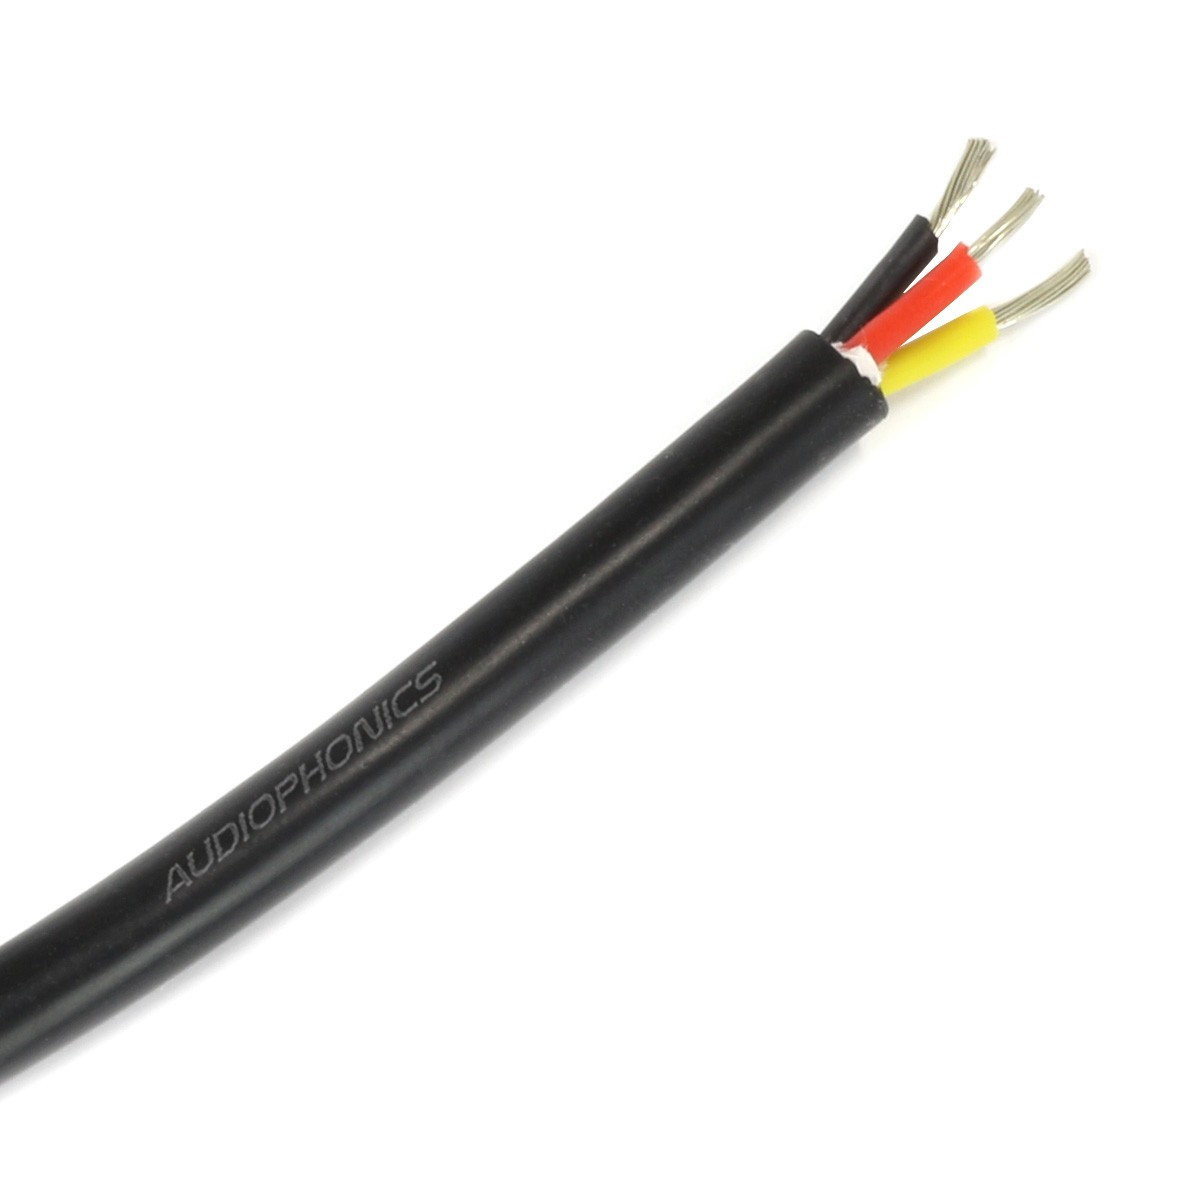 Câble Triple Conducteur Silicone 0.75mm² Noir